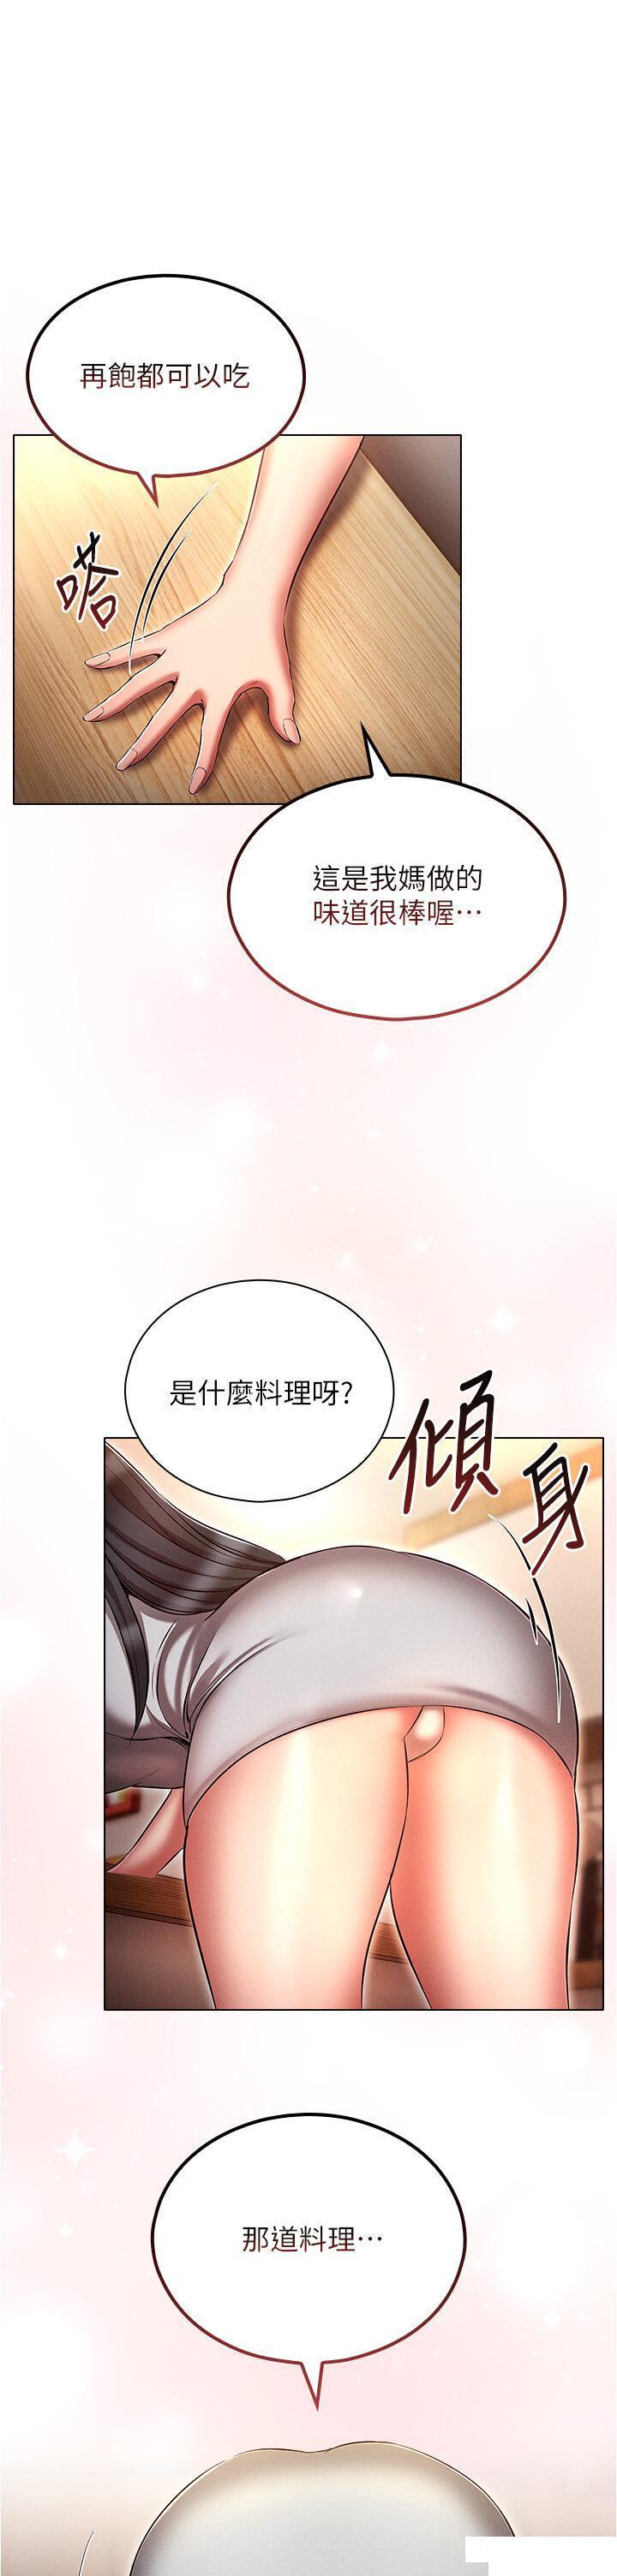 韩国污漫画 魯蛇的多重宇宙 第59话_鲜嫩可口的蜜汁鲍鱼 1